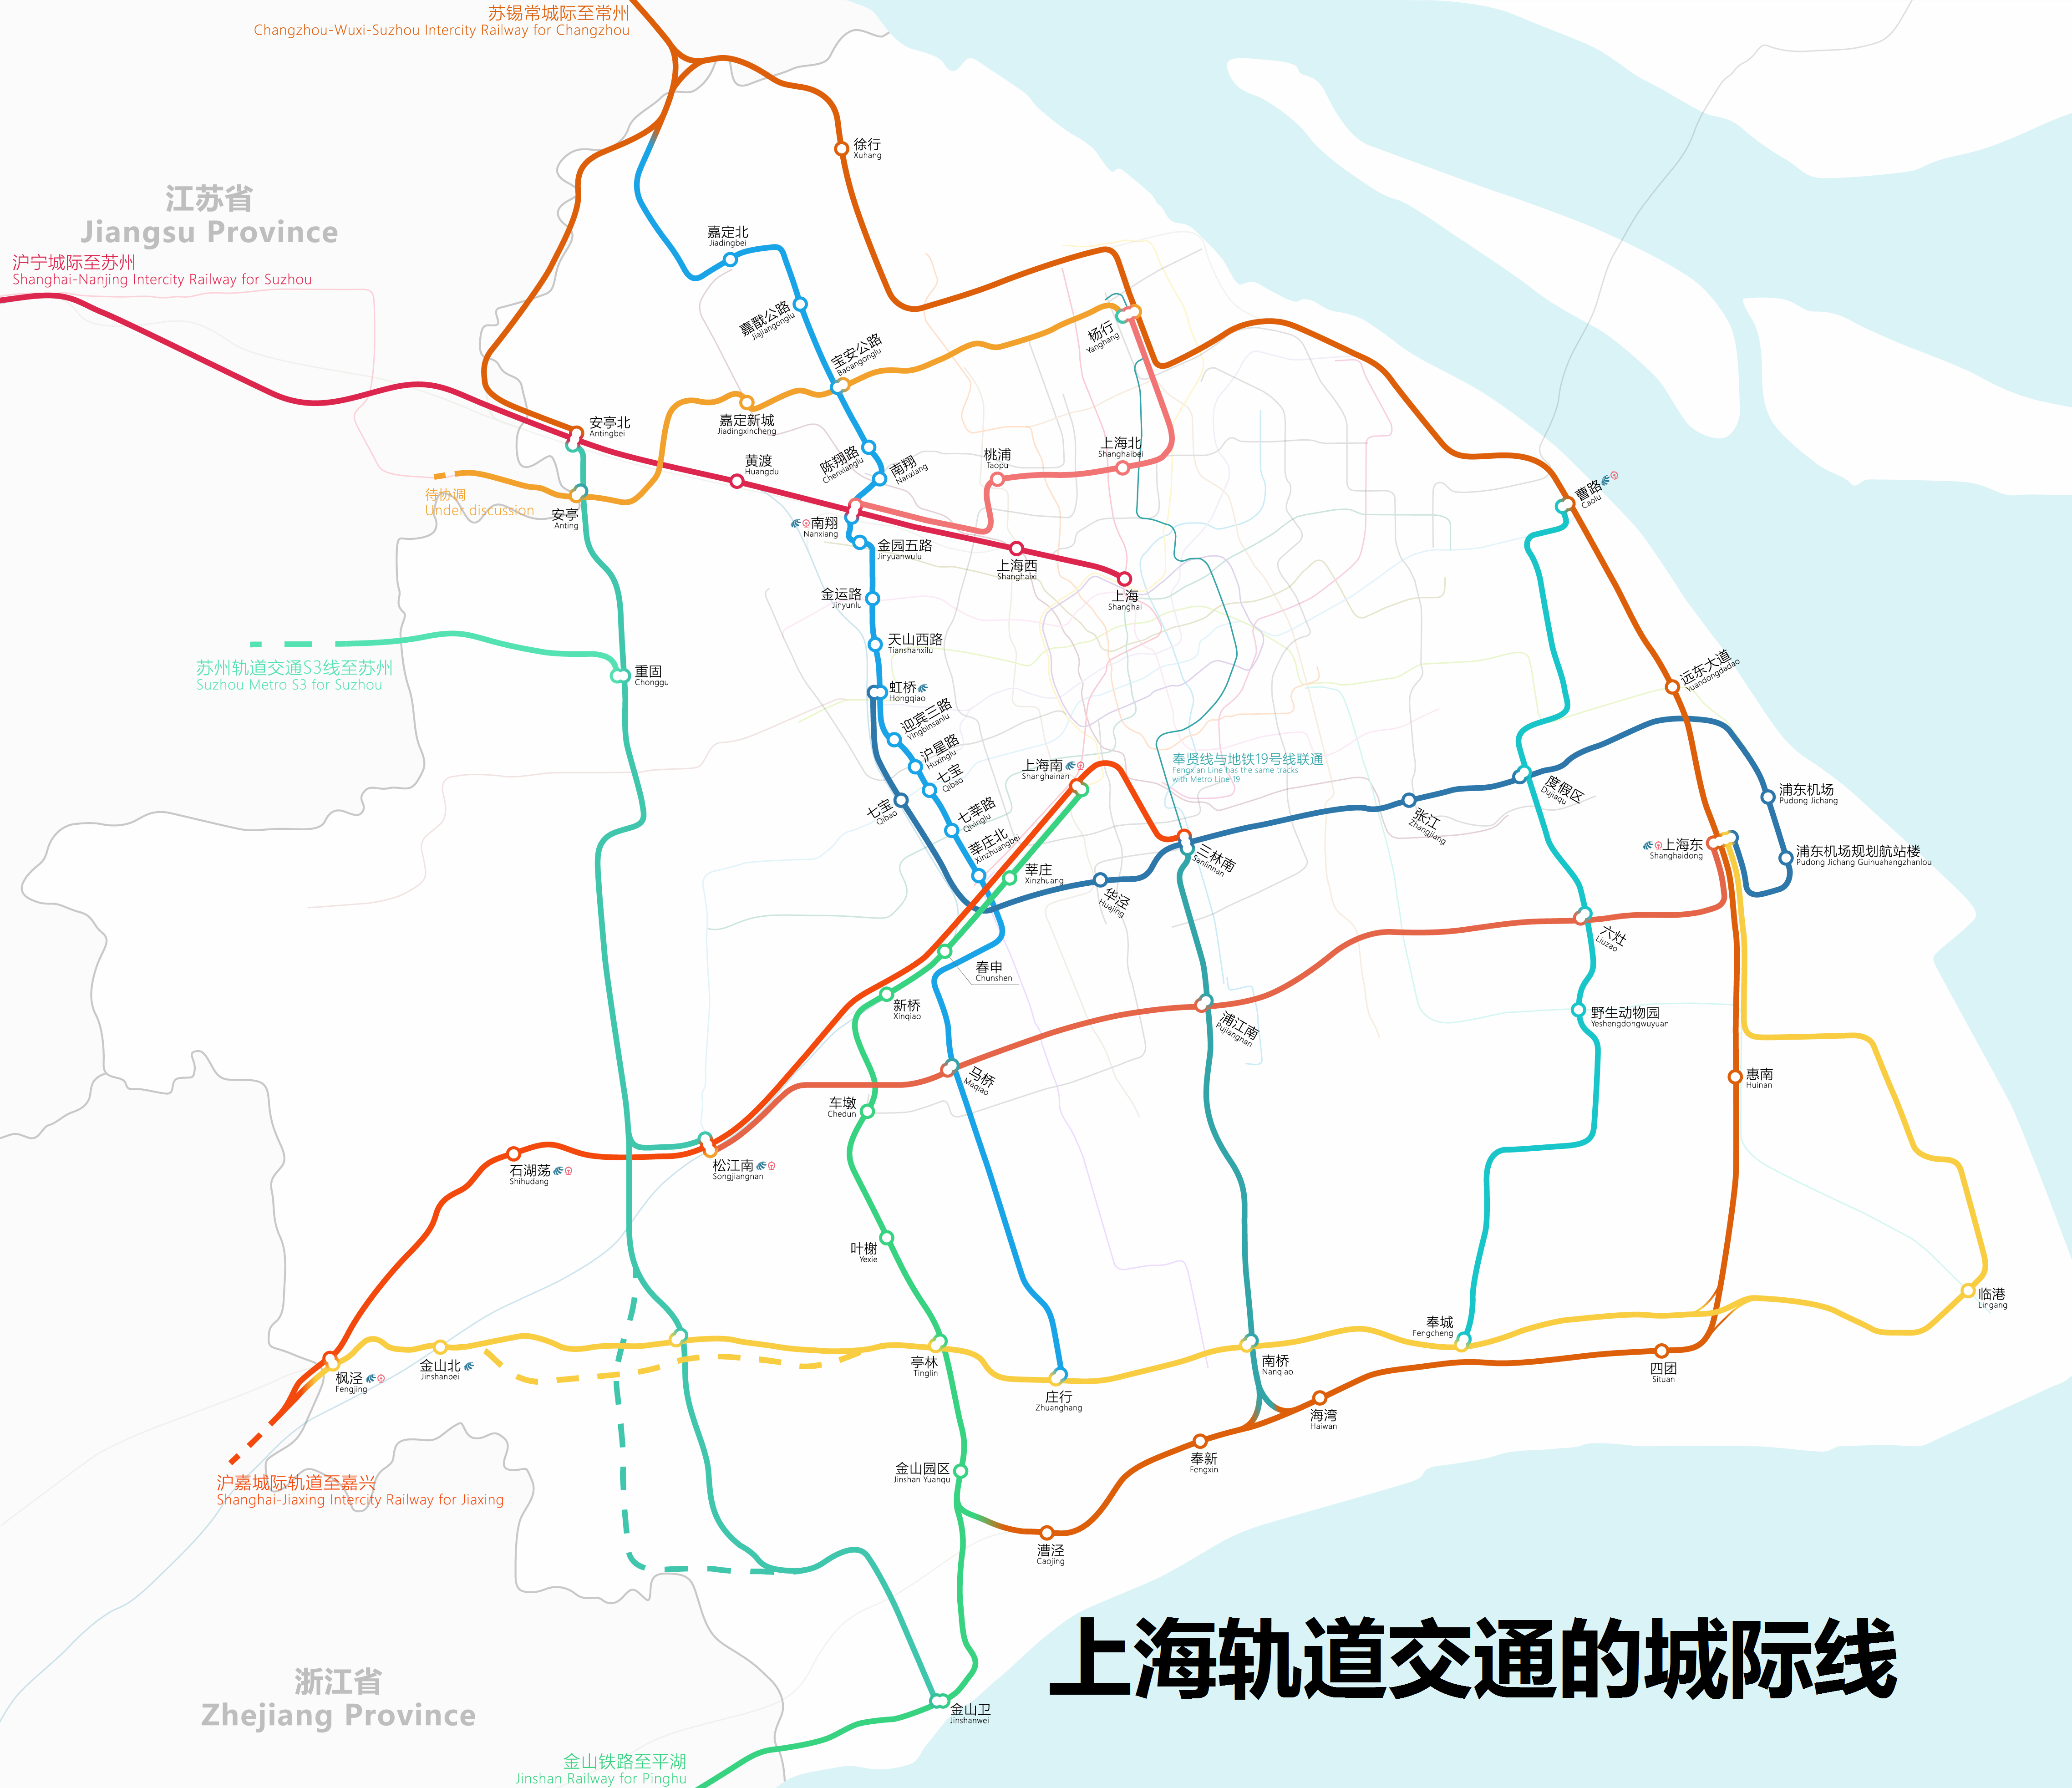 沪通铁路最新规划图图片